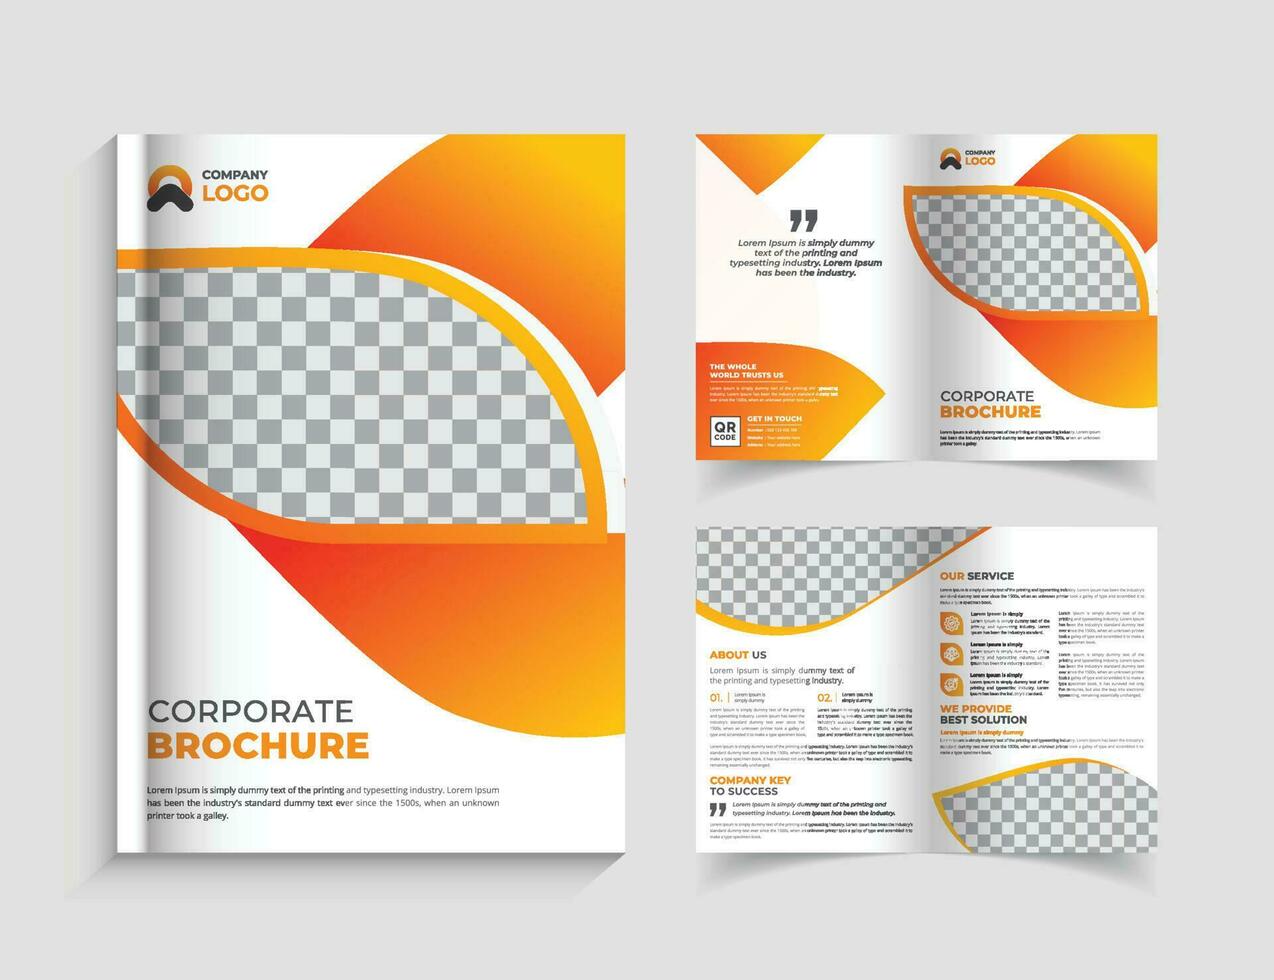 zakelijke tweevoudige brochure ontwerpsjabloon vector